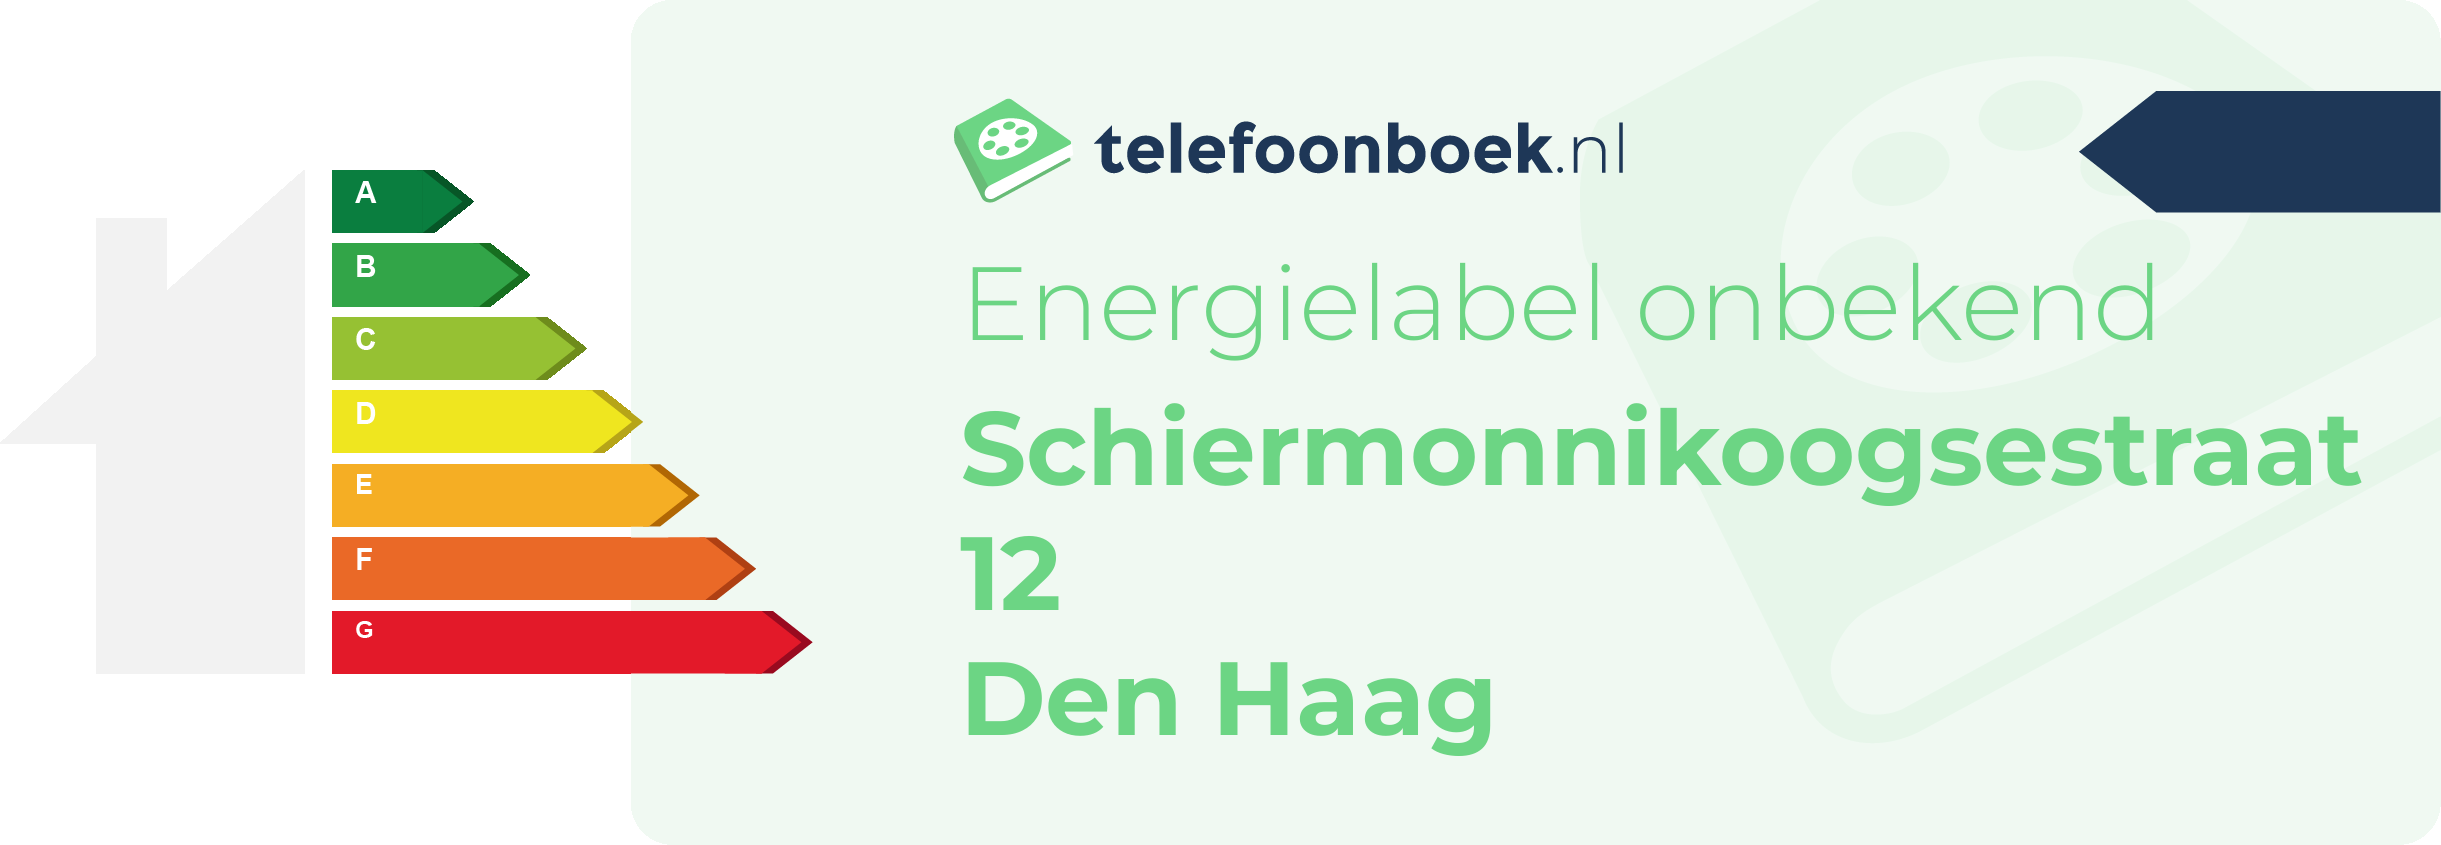 Energielabel Schiermonnikoogsestraat 12 Den Haag